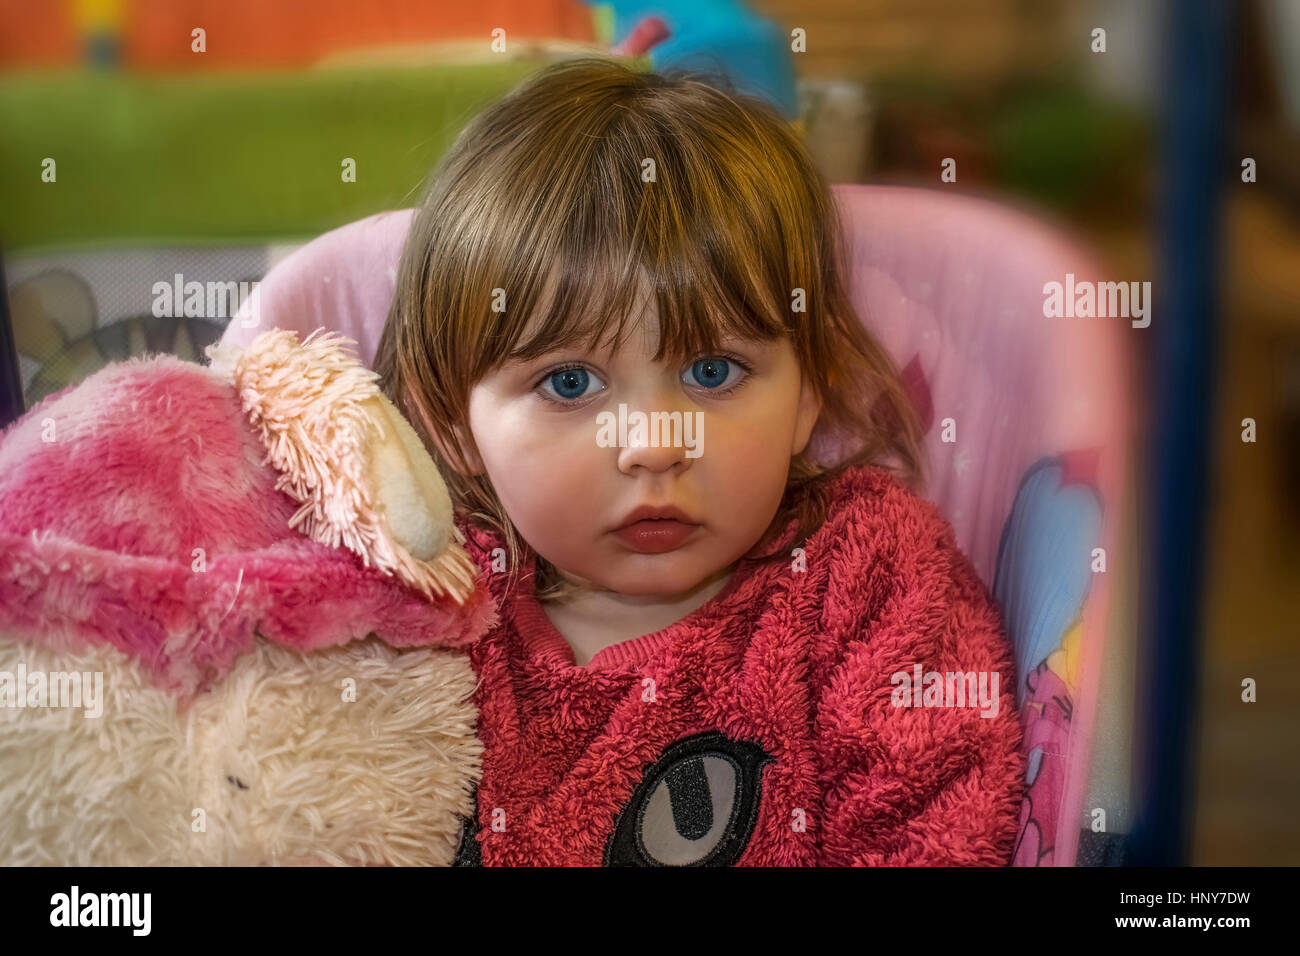 Petite fille blonde avec des yeux bleus portant un chandail rose à fourrure, innocemment dans l'appareil photo et la tenue d'un ours en peluche. Banque D'Images